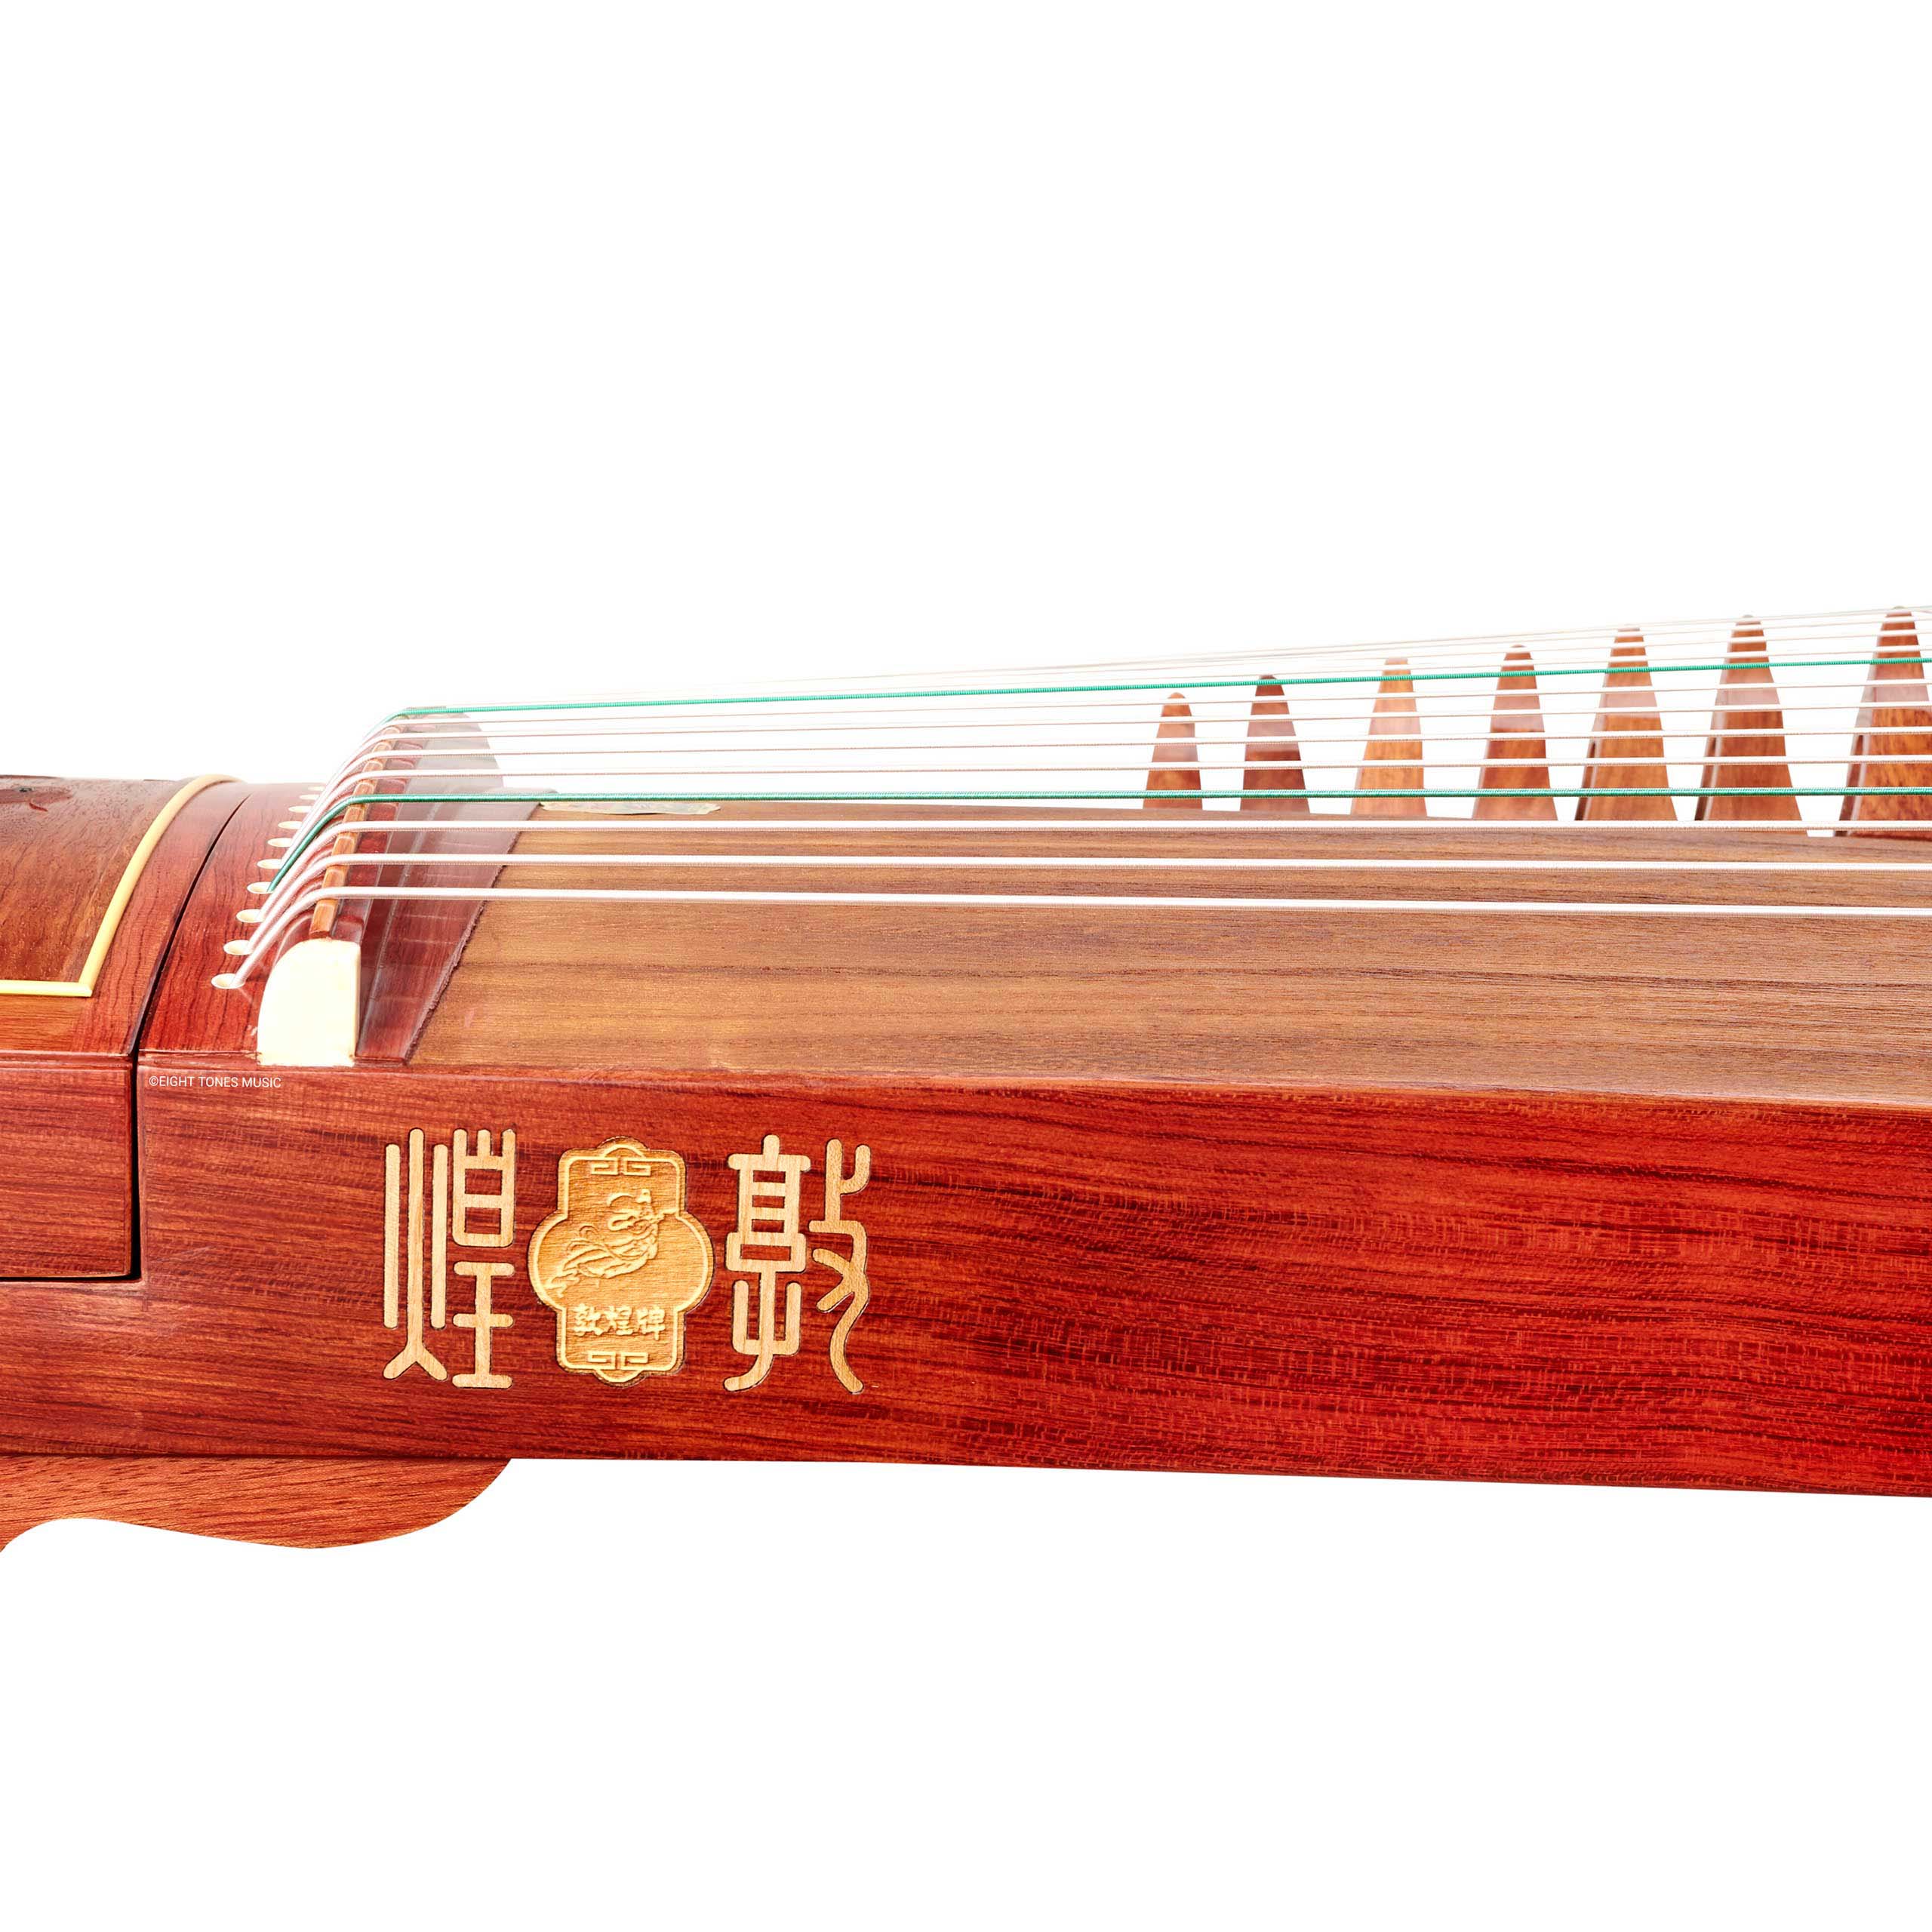 Dunhuang Yichang ‘Twin Mandarin Ducks’ Rosewood Guzheng Sideboard with brand